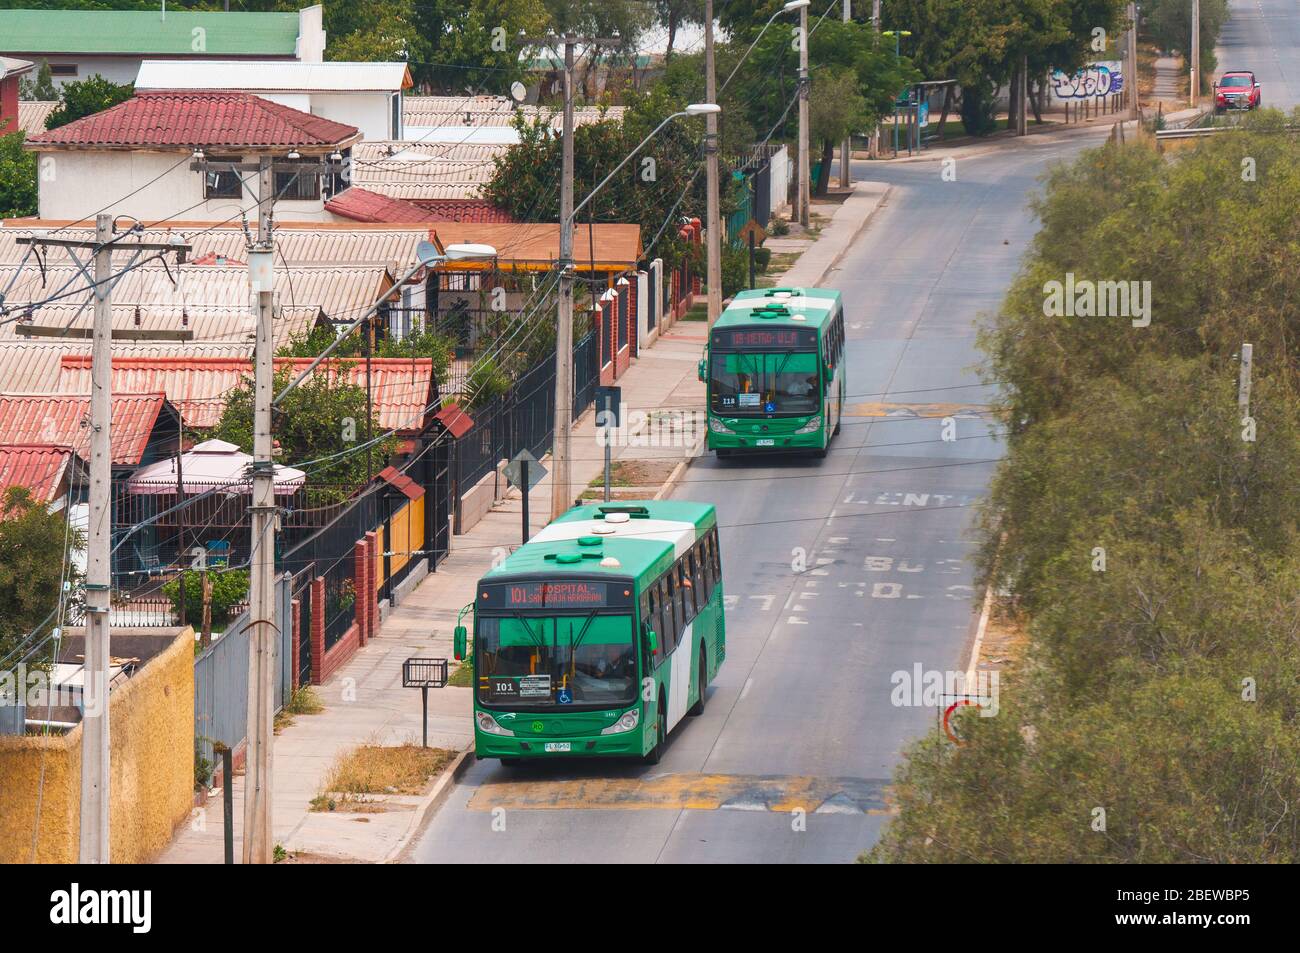 SANTIAGO, CILE - GENNAIO 2016: Un autobus Transantiago a Cerrillos Foto Stock